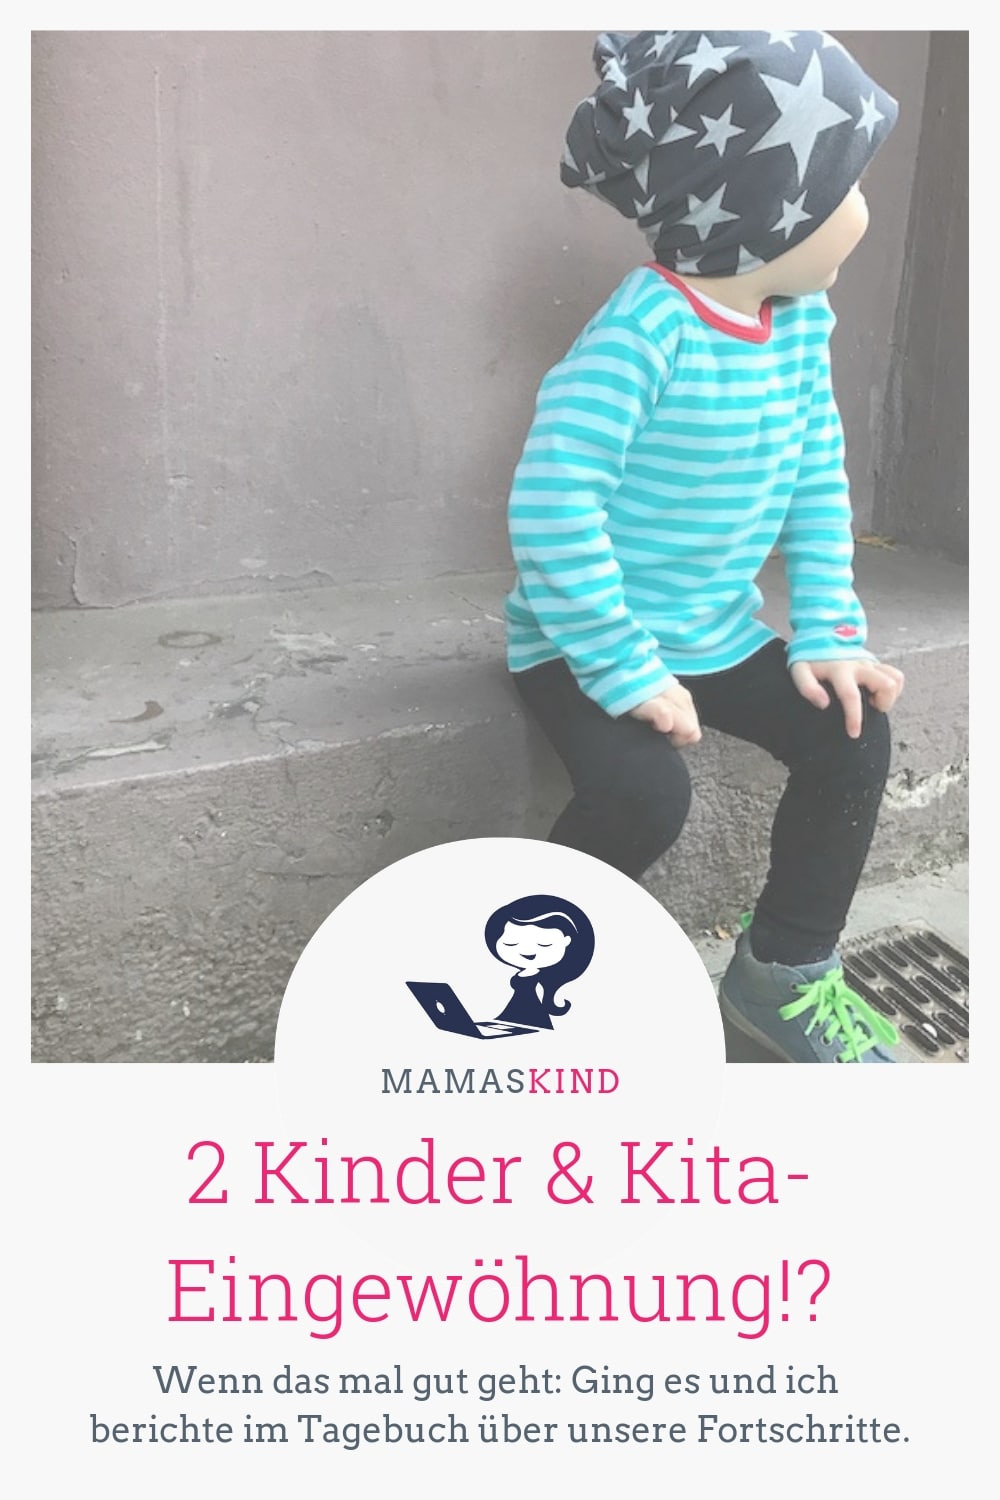 Zwei Kinder in der Kita-Eingewöhnung: gleichzeitig? Das klappte bei uns sehr gut! | Mehr Infos zur Kita-Eingewöhnung mit 2 Kindern auf Mamaskind.de